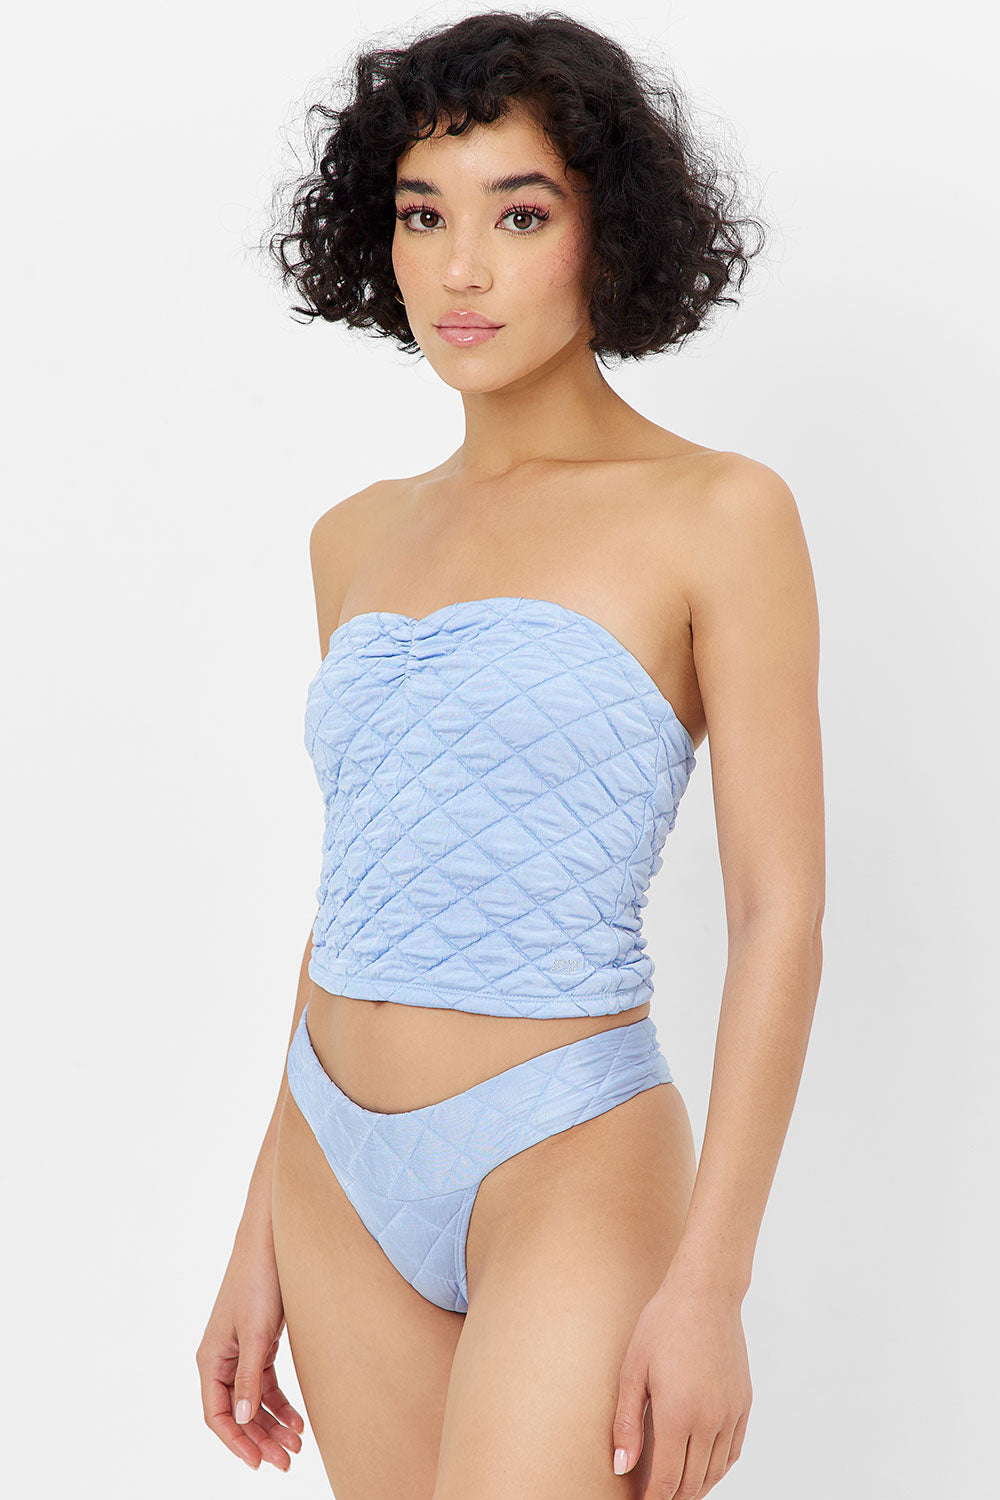 Marina bikini bottom underwear - Baby blue